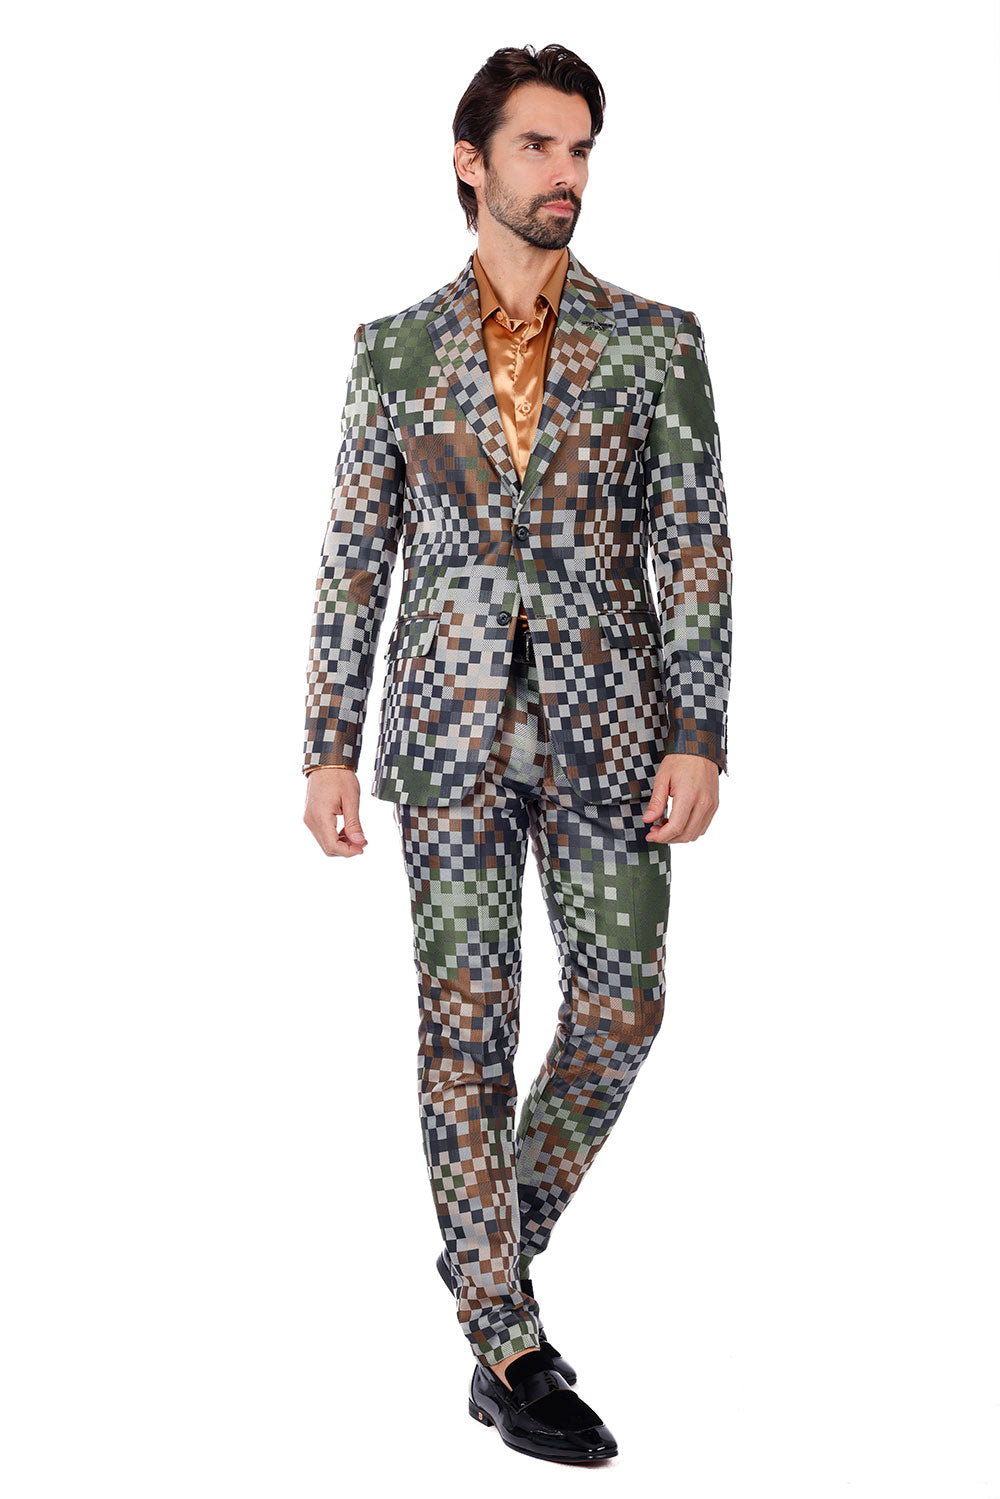 BARABAS Men's Camouflage Cotton Notched Lapel Suit 3SU28 Camouflage